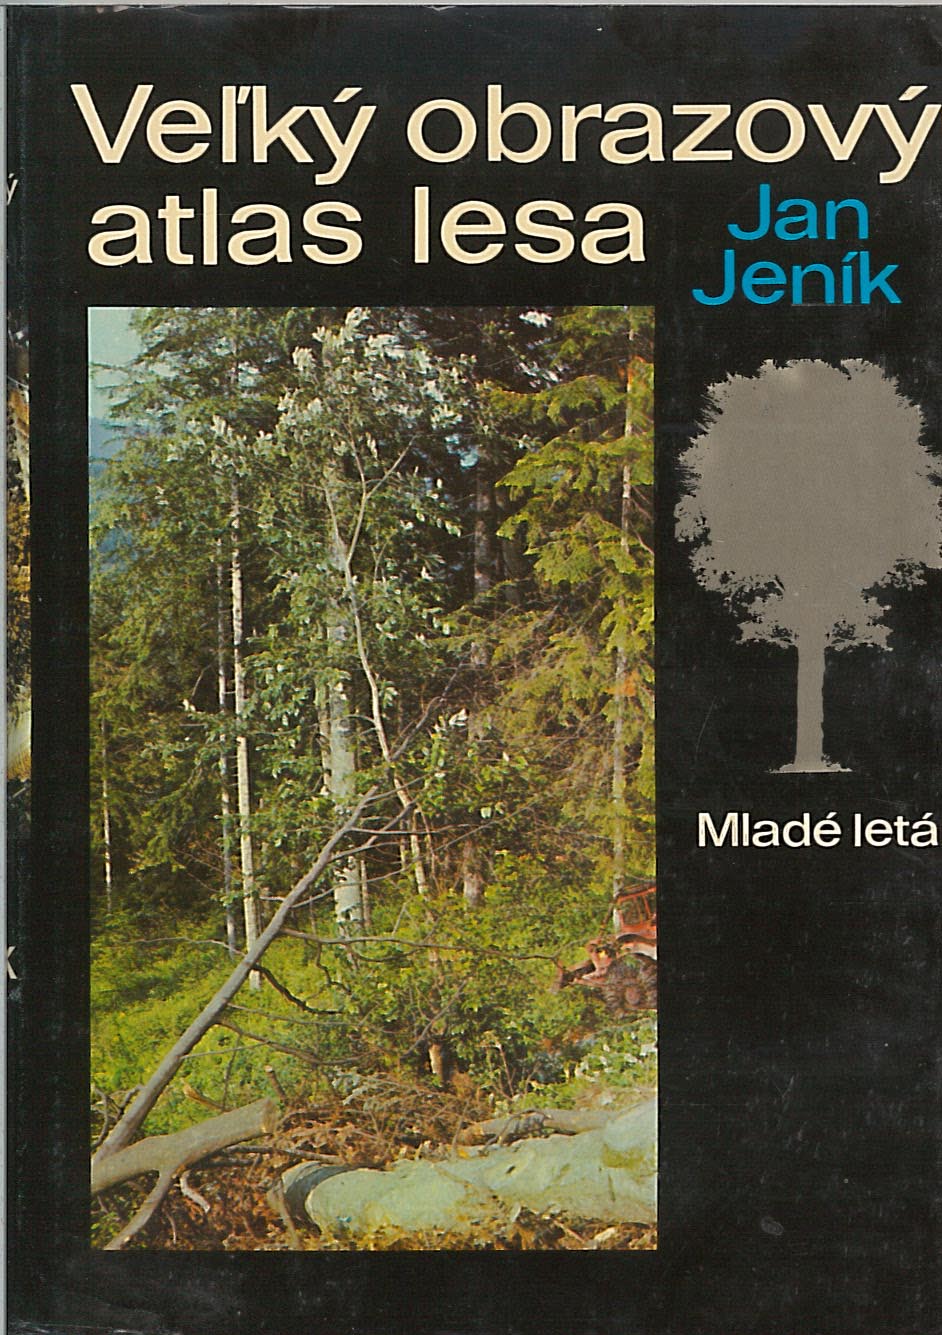 Veľký obrazový atlas lesa (Jan Jeník)